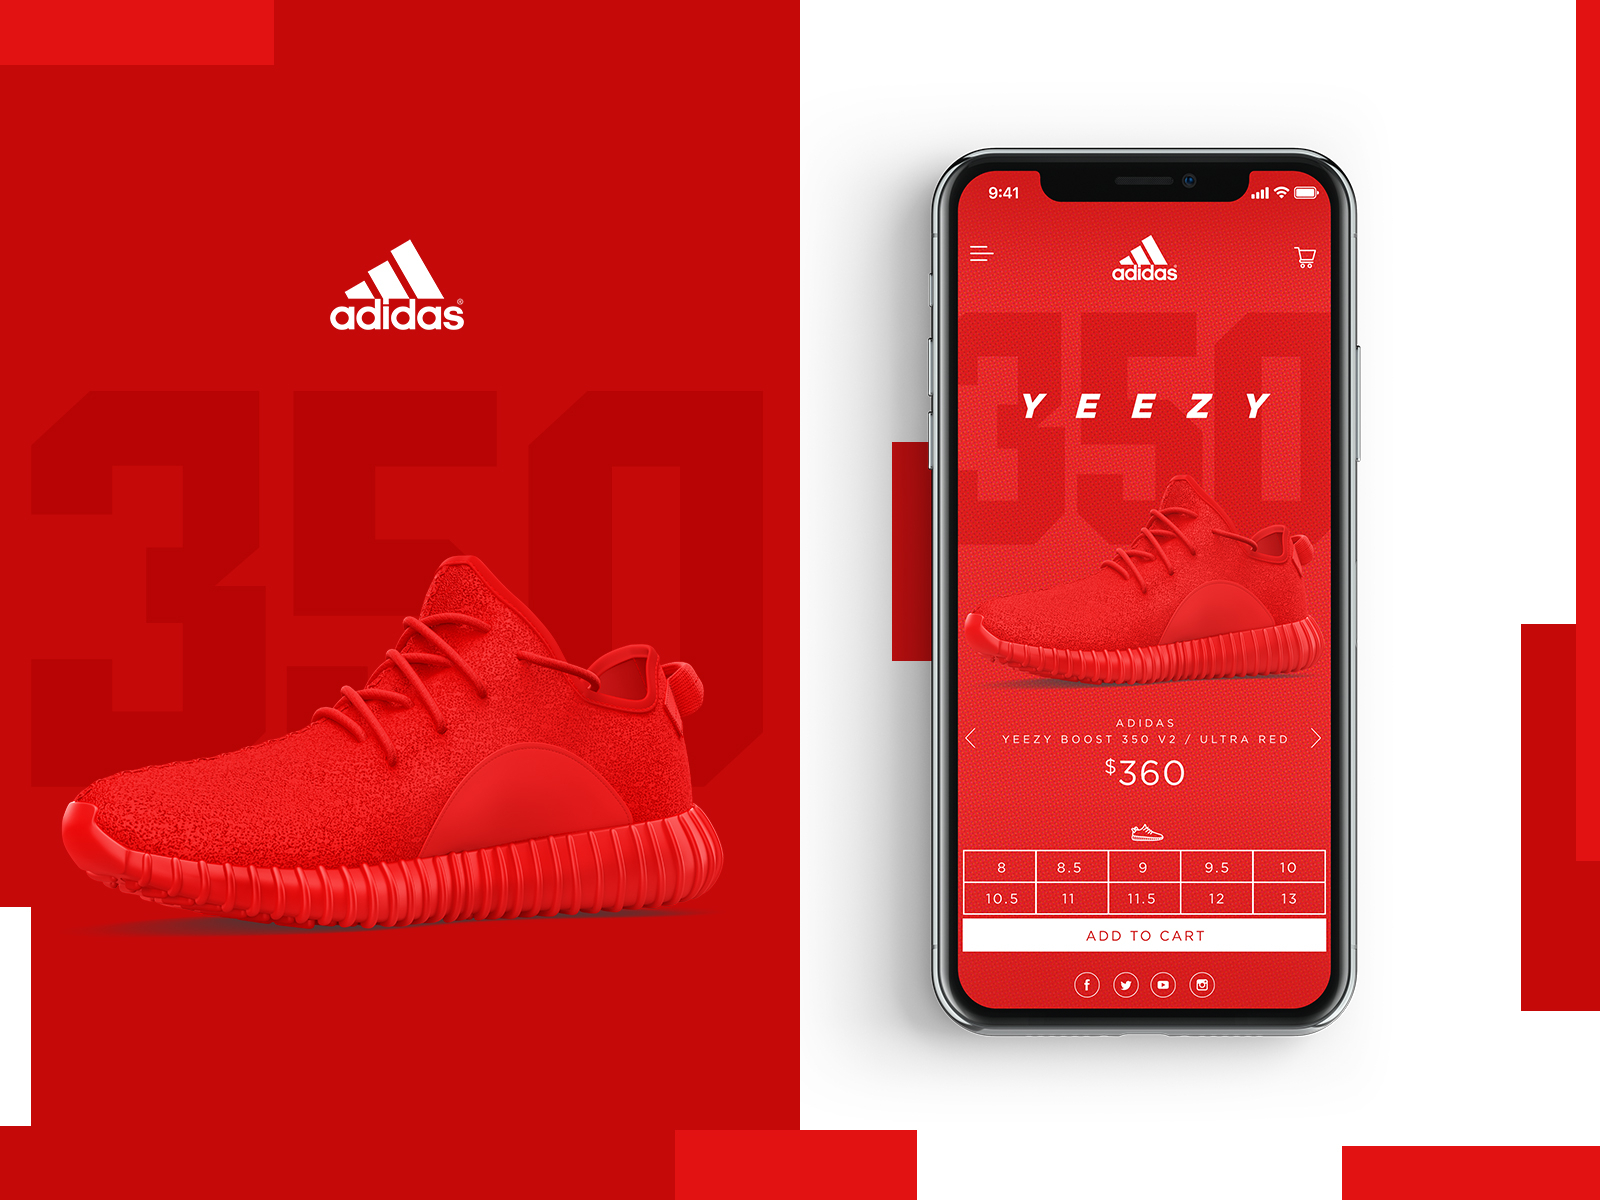 buy yeezy on adidas website